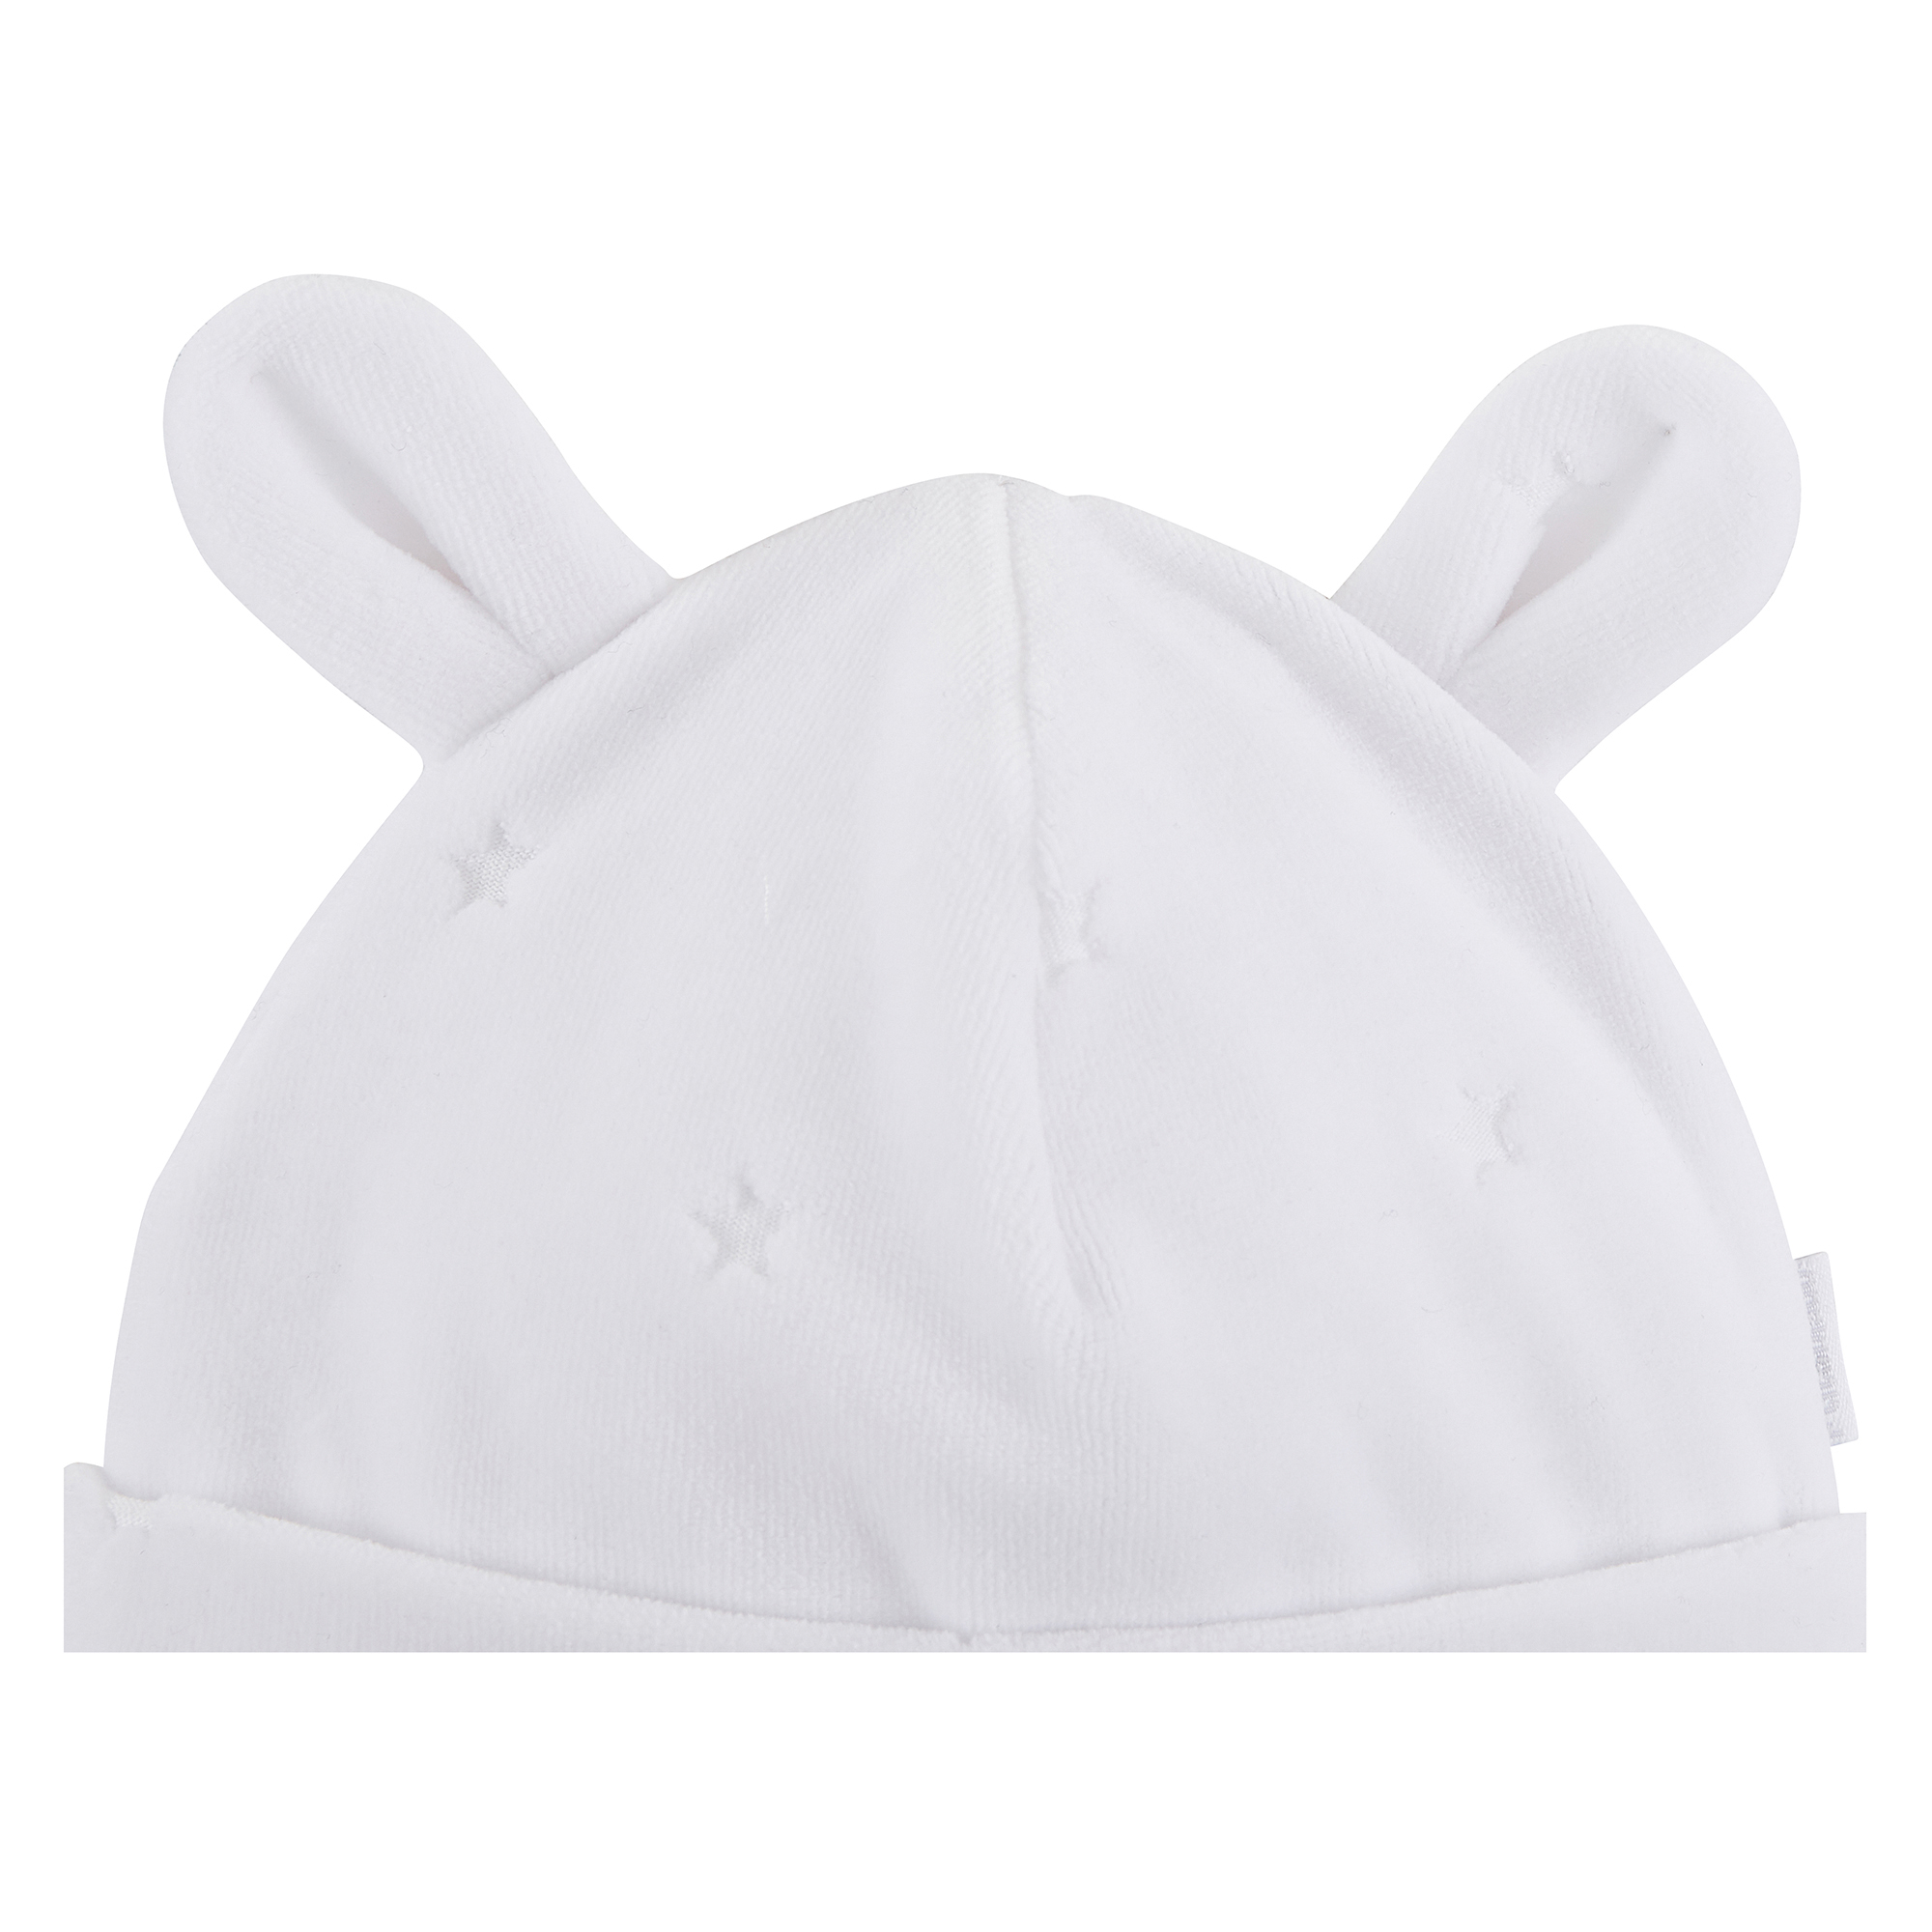 Bonnet de naissance en cachemire blanc pour bébé - Malgo